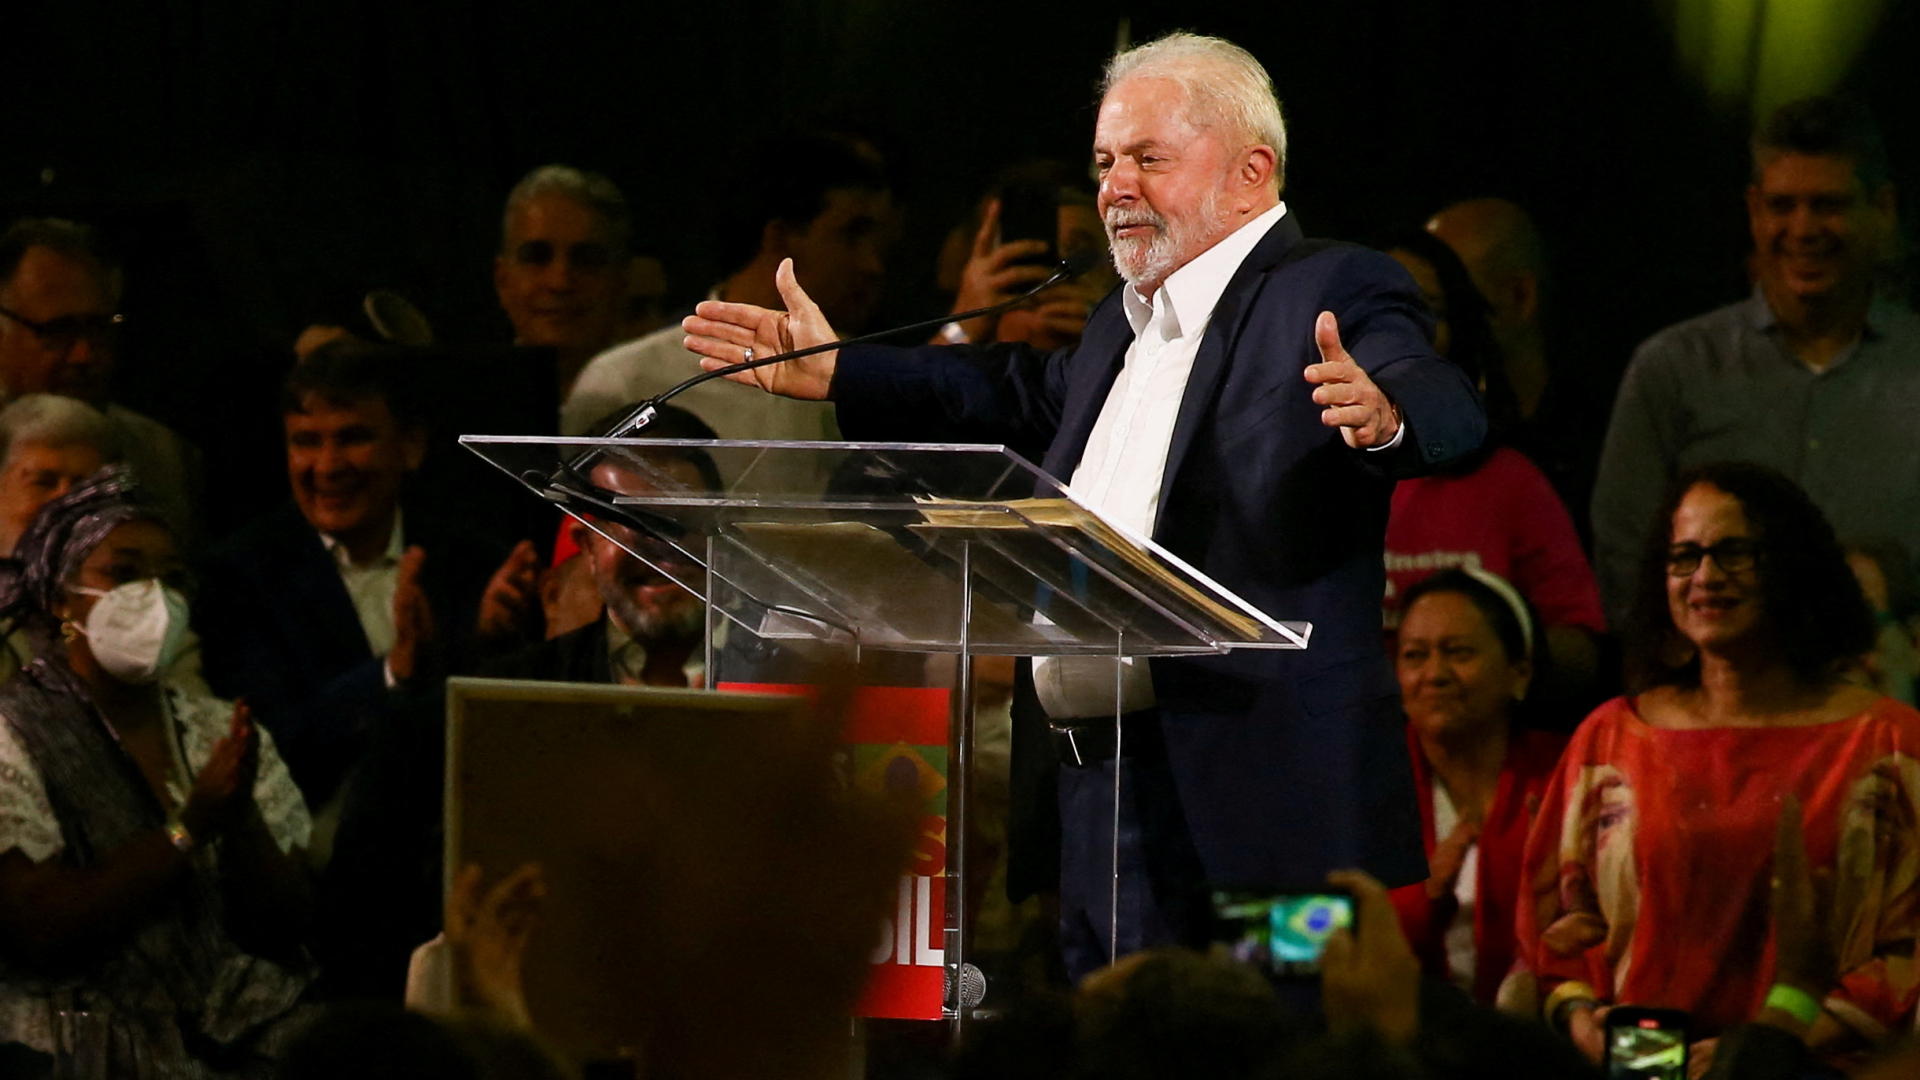 Brasiliens Ex-Präsident Lula spricht auf einer Veranstaltung in Sao Paulo. | REUTERS